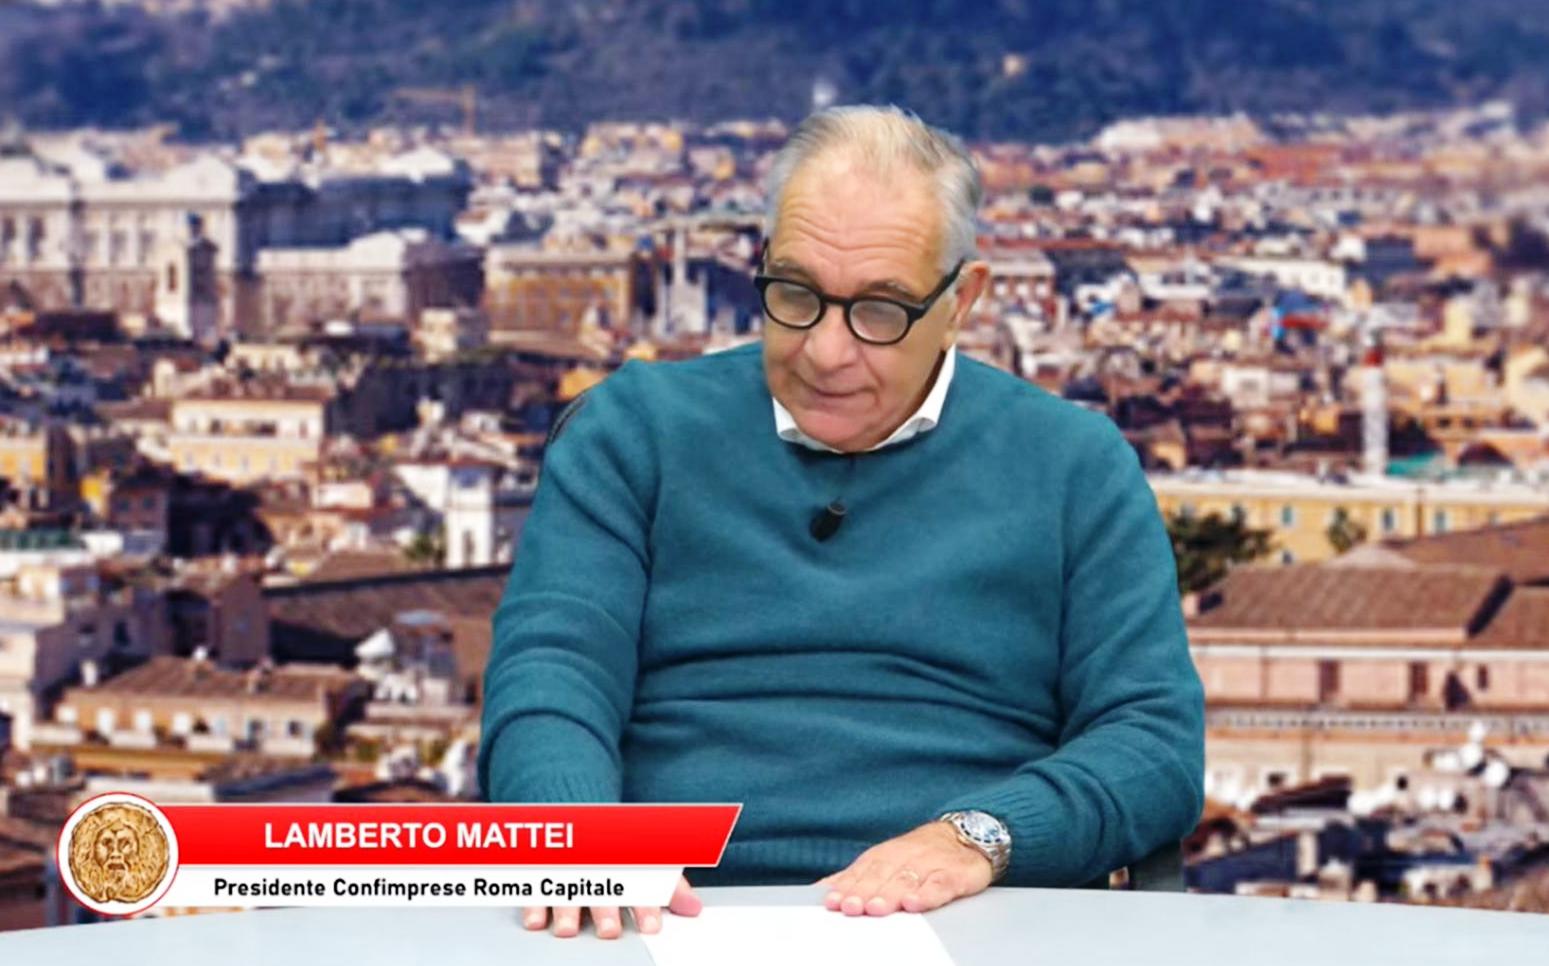 Confimprese Roma Capitale, Lamberto Mattei: “azioni costanti presso le CCIAA”